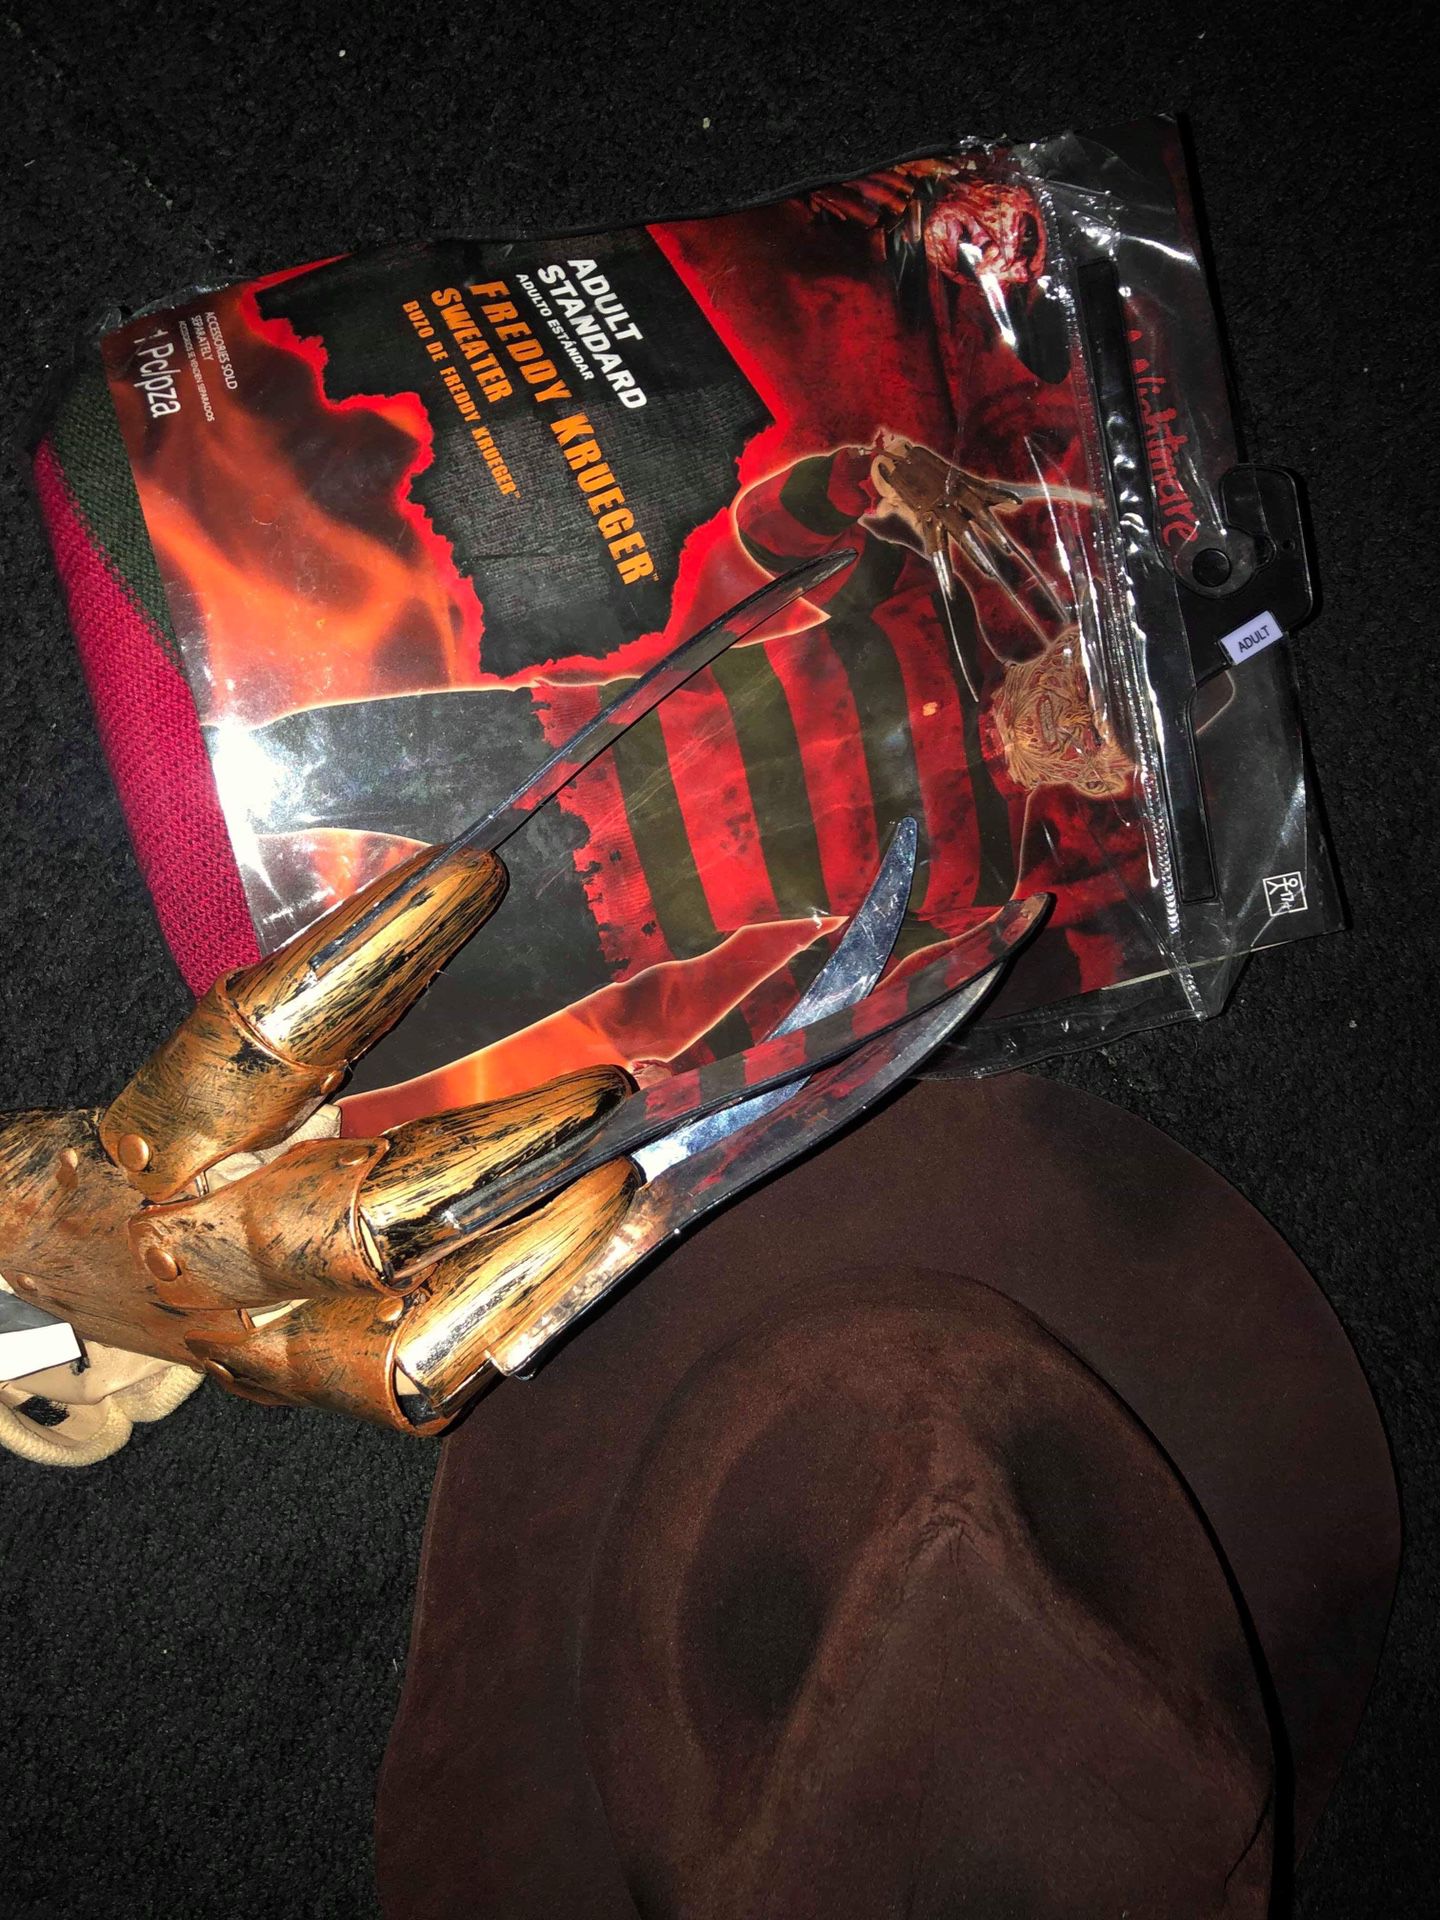 Freddy Krueger costume